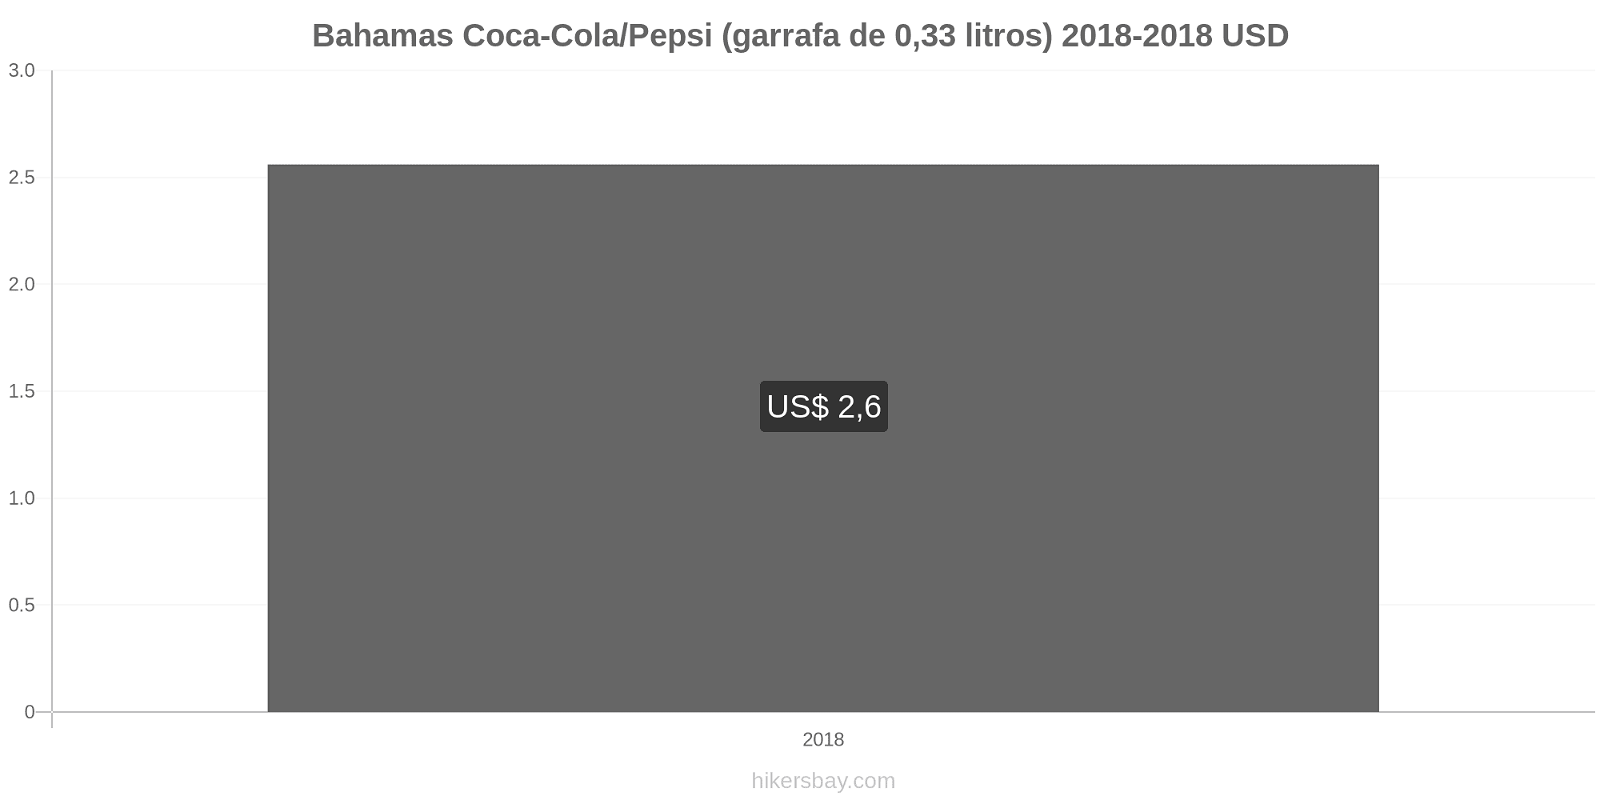 Bahamas mudanças de preços Coca-Cola/Pepsi (garrafa de 0.33 litros) hikersbay.com